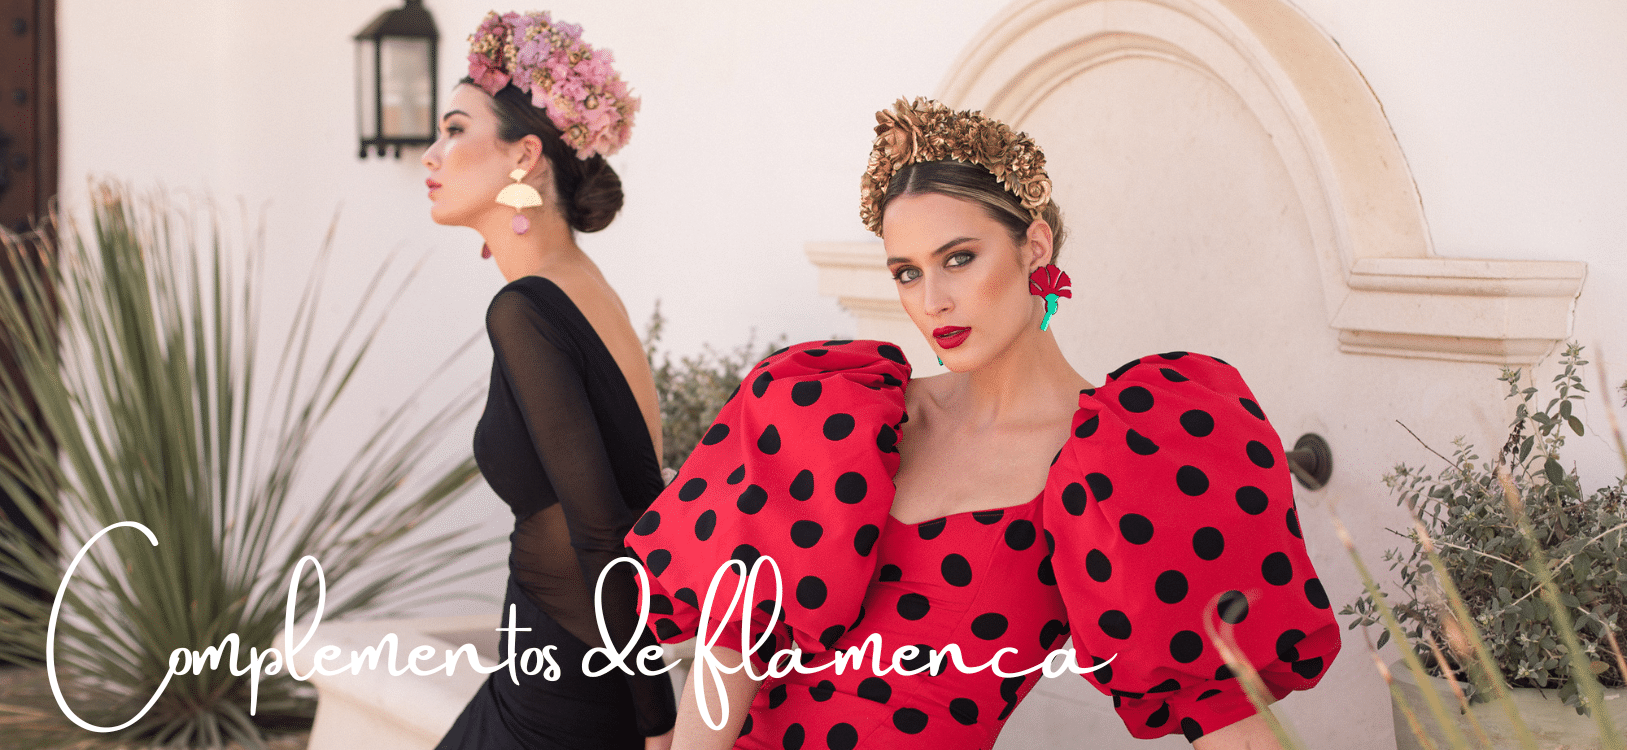 Complementos de flamenca